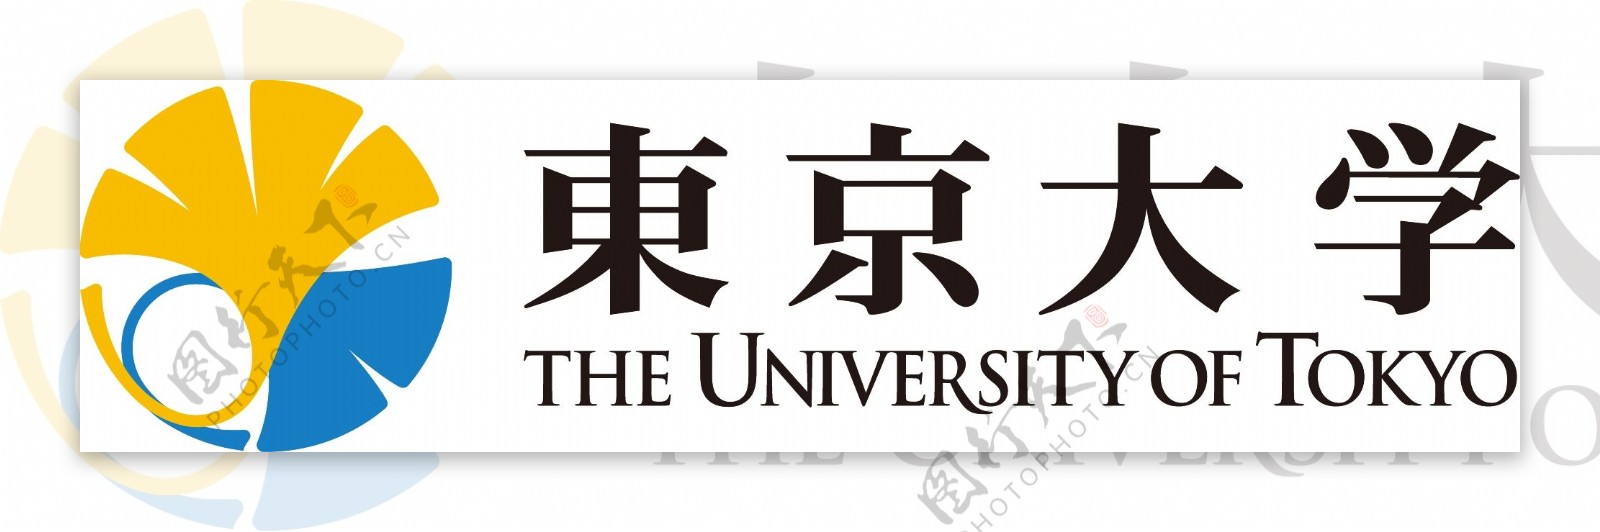 日本东京大学校徽新版